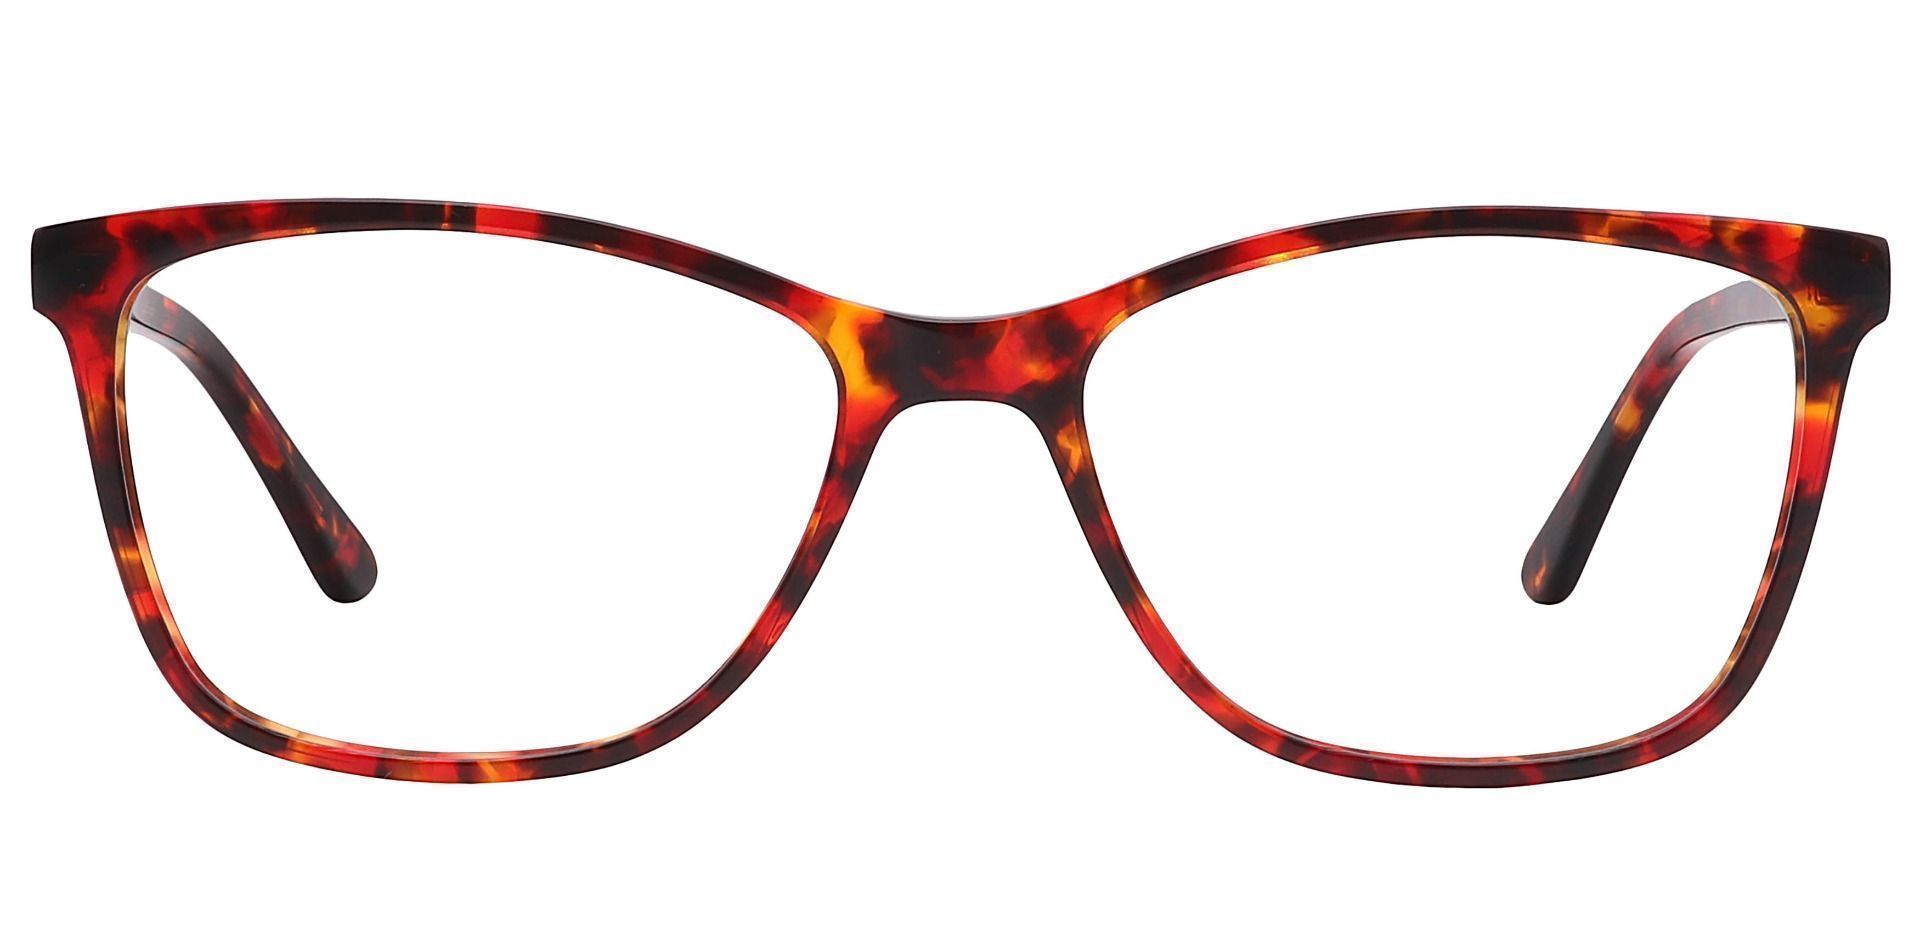 Antonia Square Prescription Glasses - Red